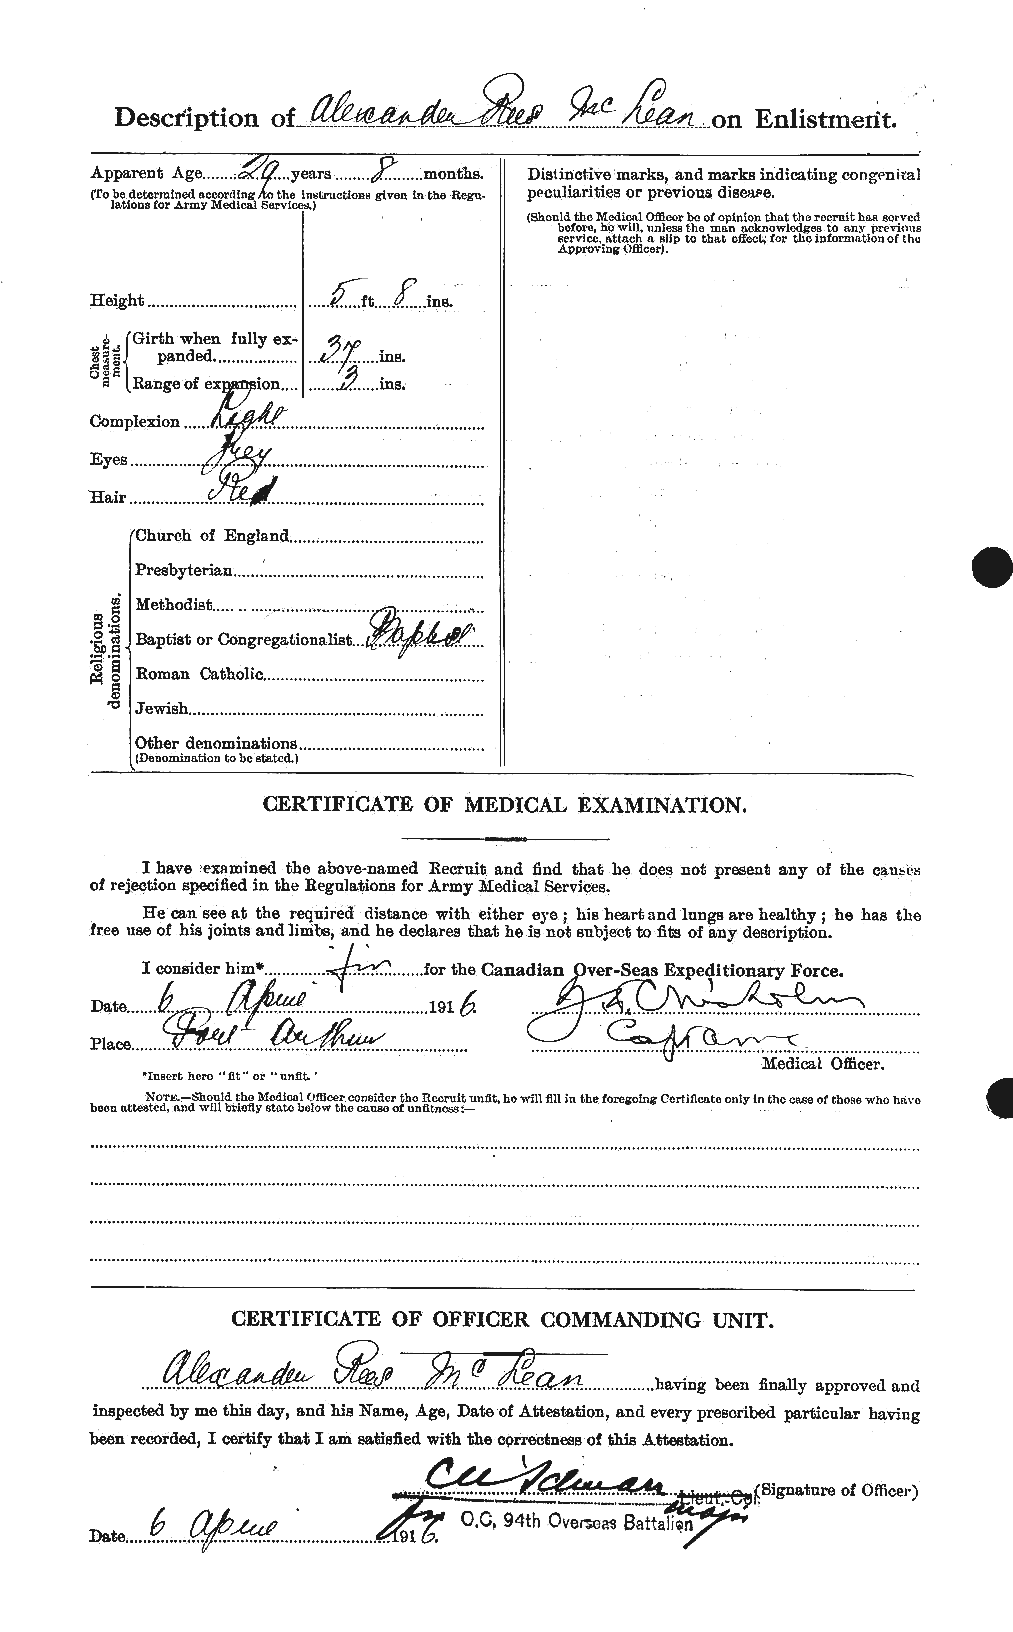 Dossiers du Personnel de la Première Guerre mondiale - CEC 532766b